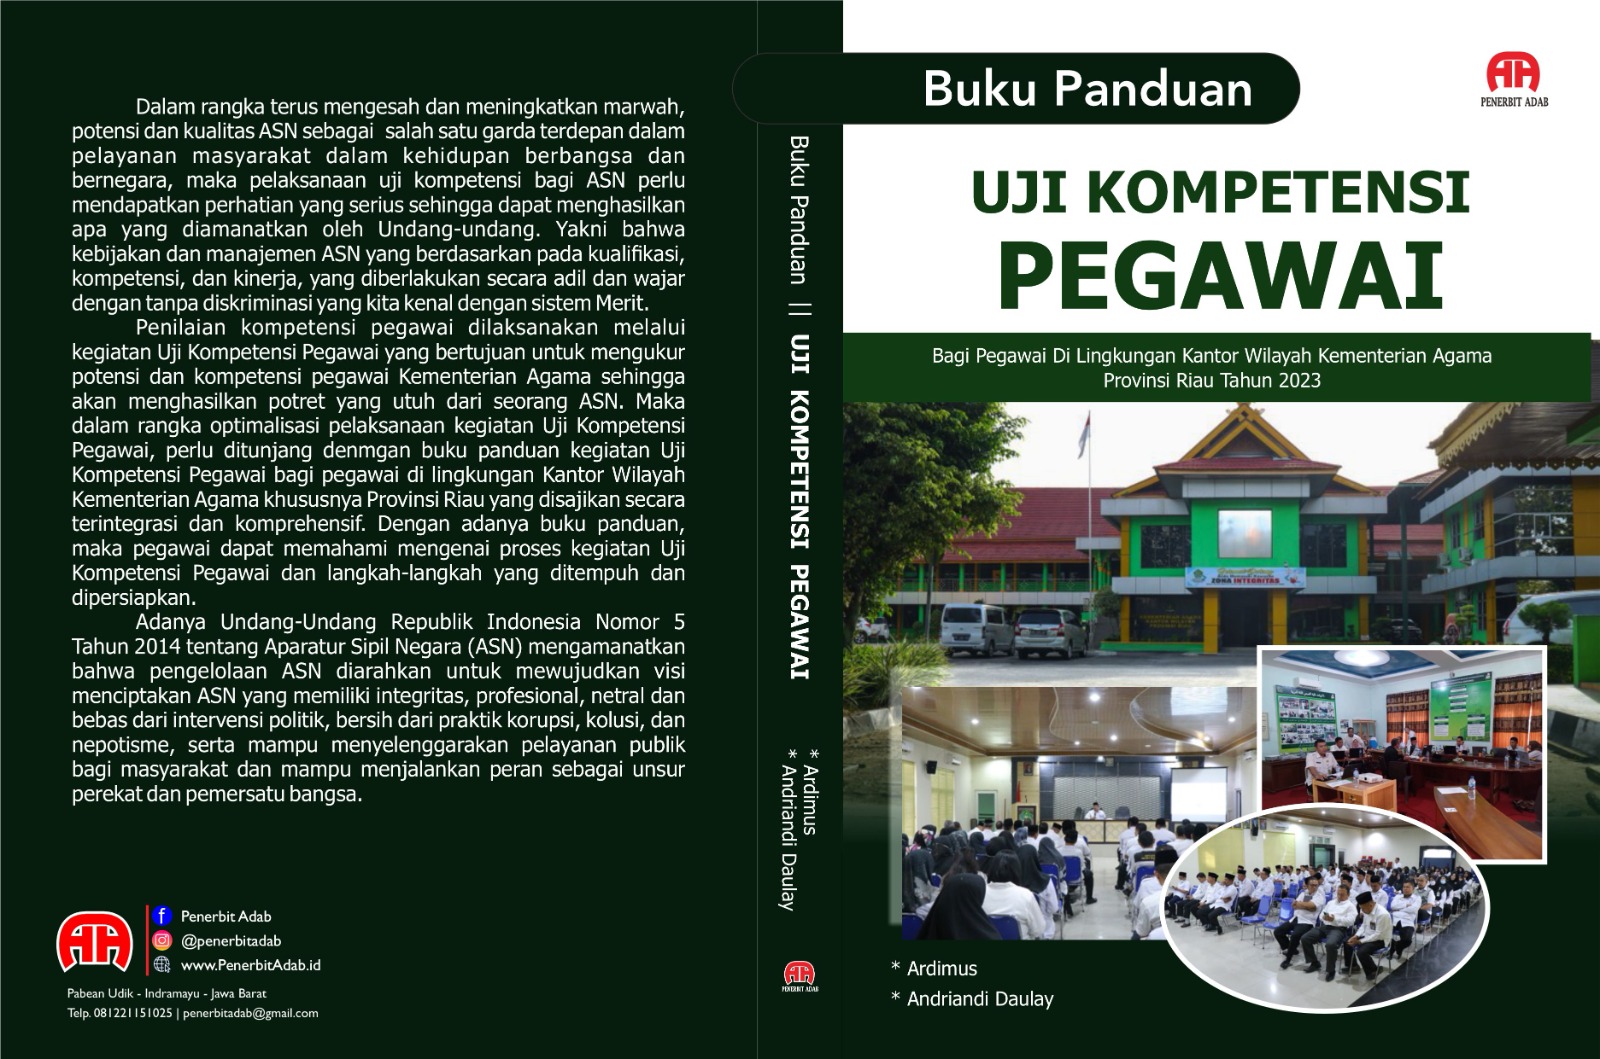 Panduan Uji Kompetensi Pegawai bagi Pegawai di Lingkungan Kantor Wilayah Kementerian Agama Provinsi Riau